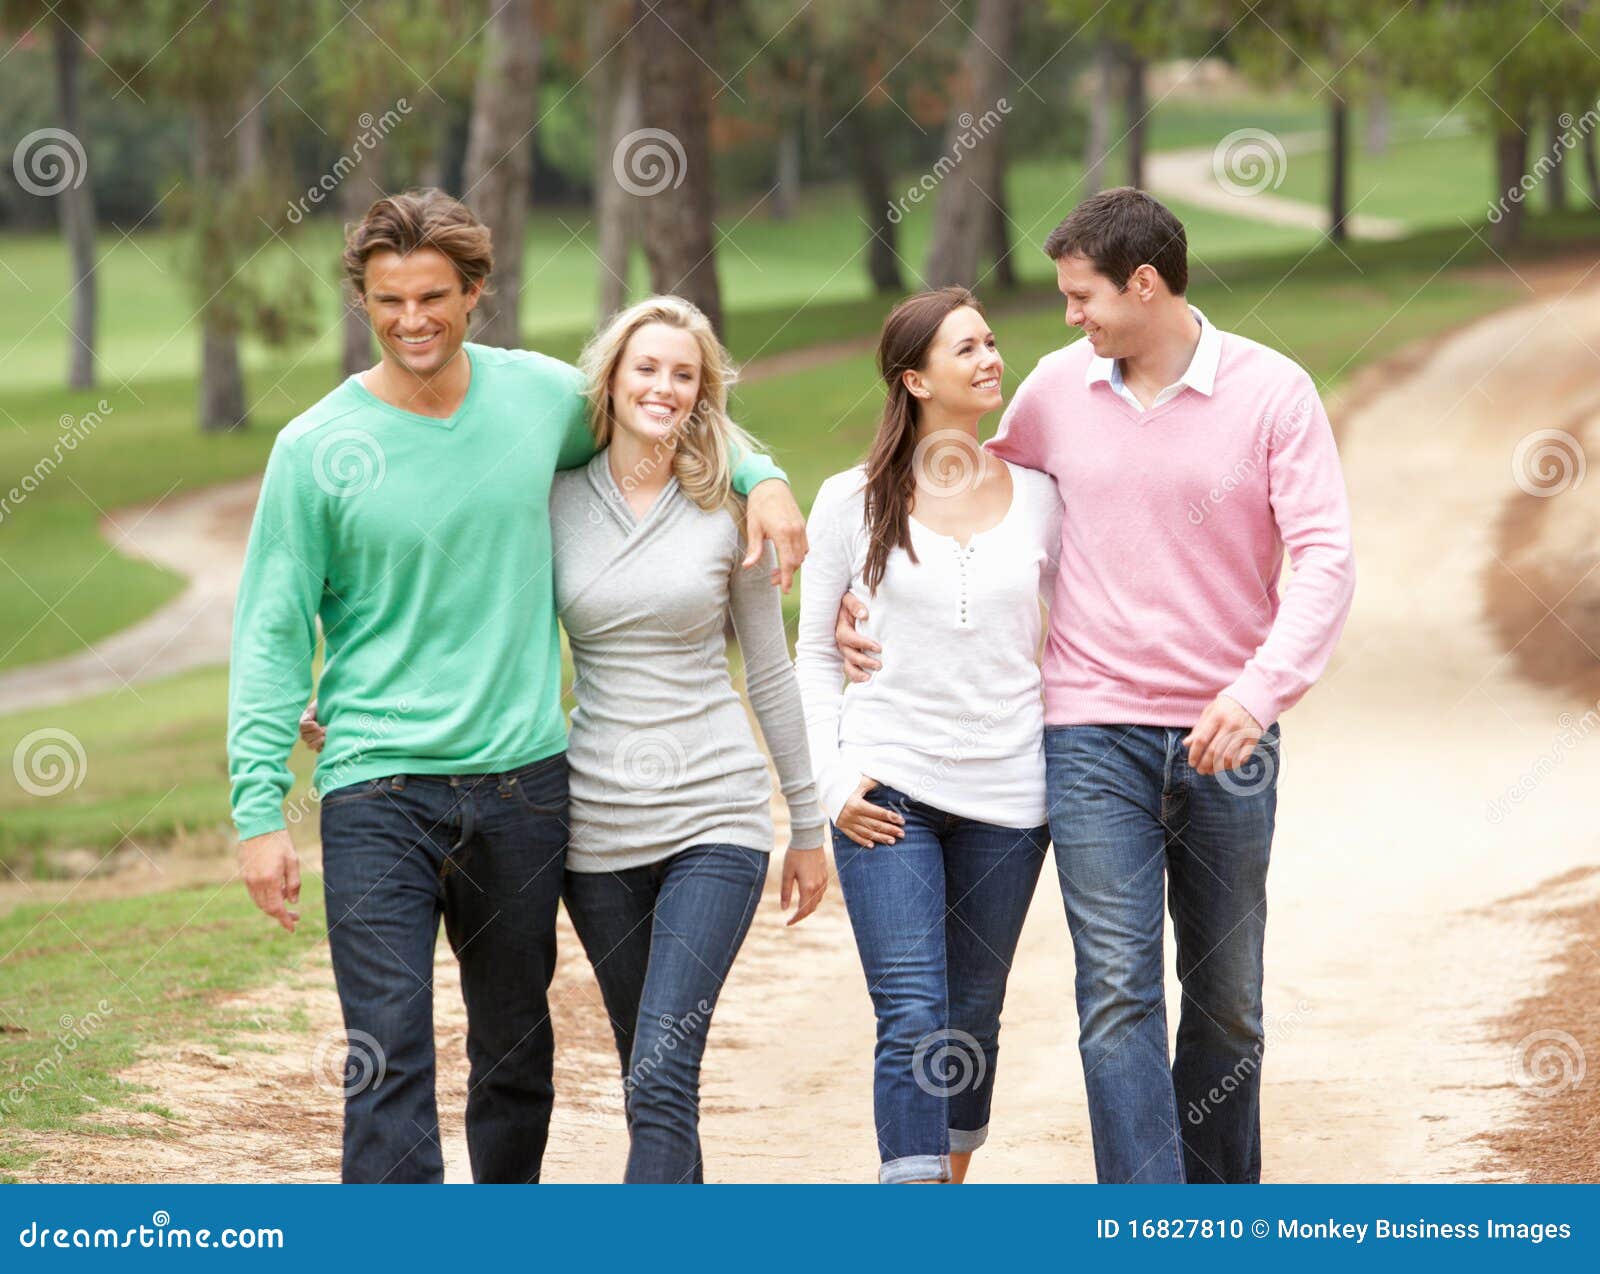 Включи 2 семейных. Люди гуляют. Молодые люди гуляют. Несколько парочек. Две семейные пары.